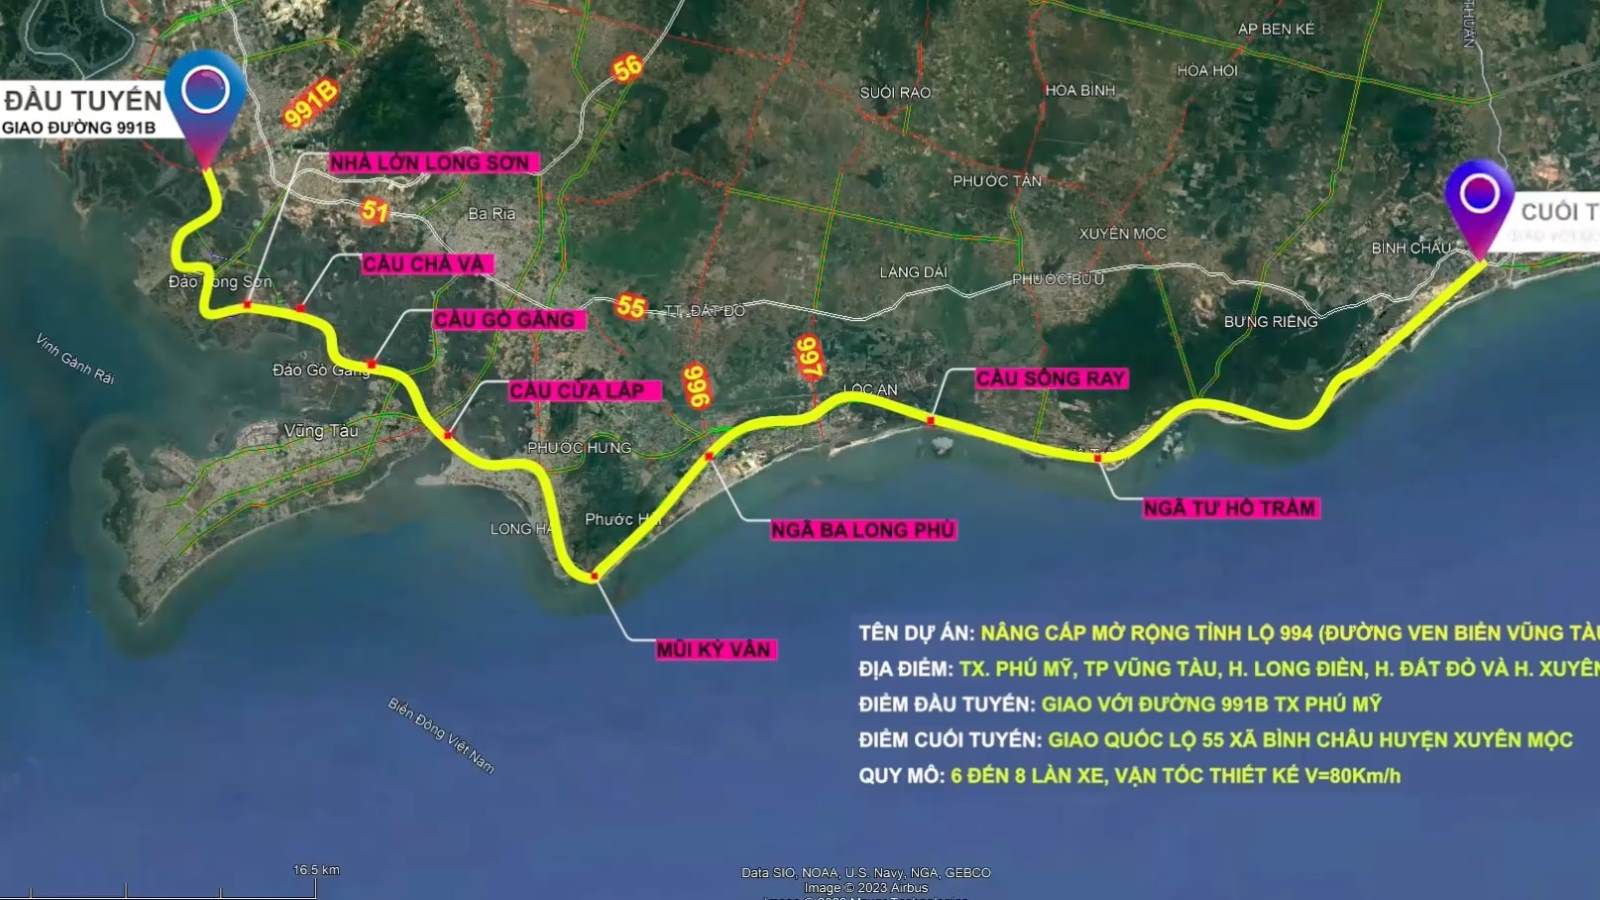 Tuyến đường ven biển ĐT994 dài hơn 77km, kết nối trục Đông-Tây tỉnh Bà Rịa - Vũng Tàu được kỳ vọng sẽ tạo sức bật cho kinh tế địa phương. Ảnh: BQLDA chuyên ngành giao thông